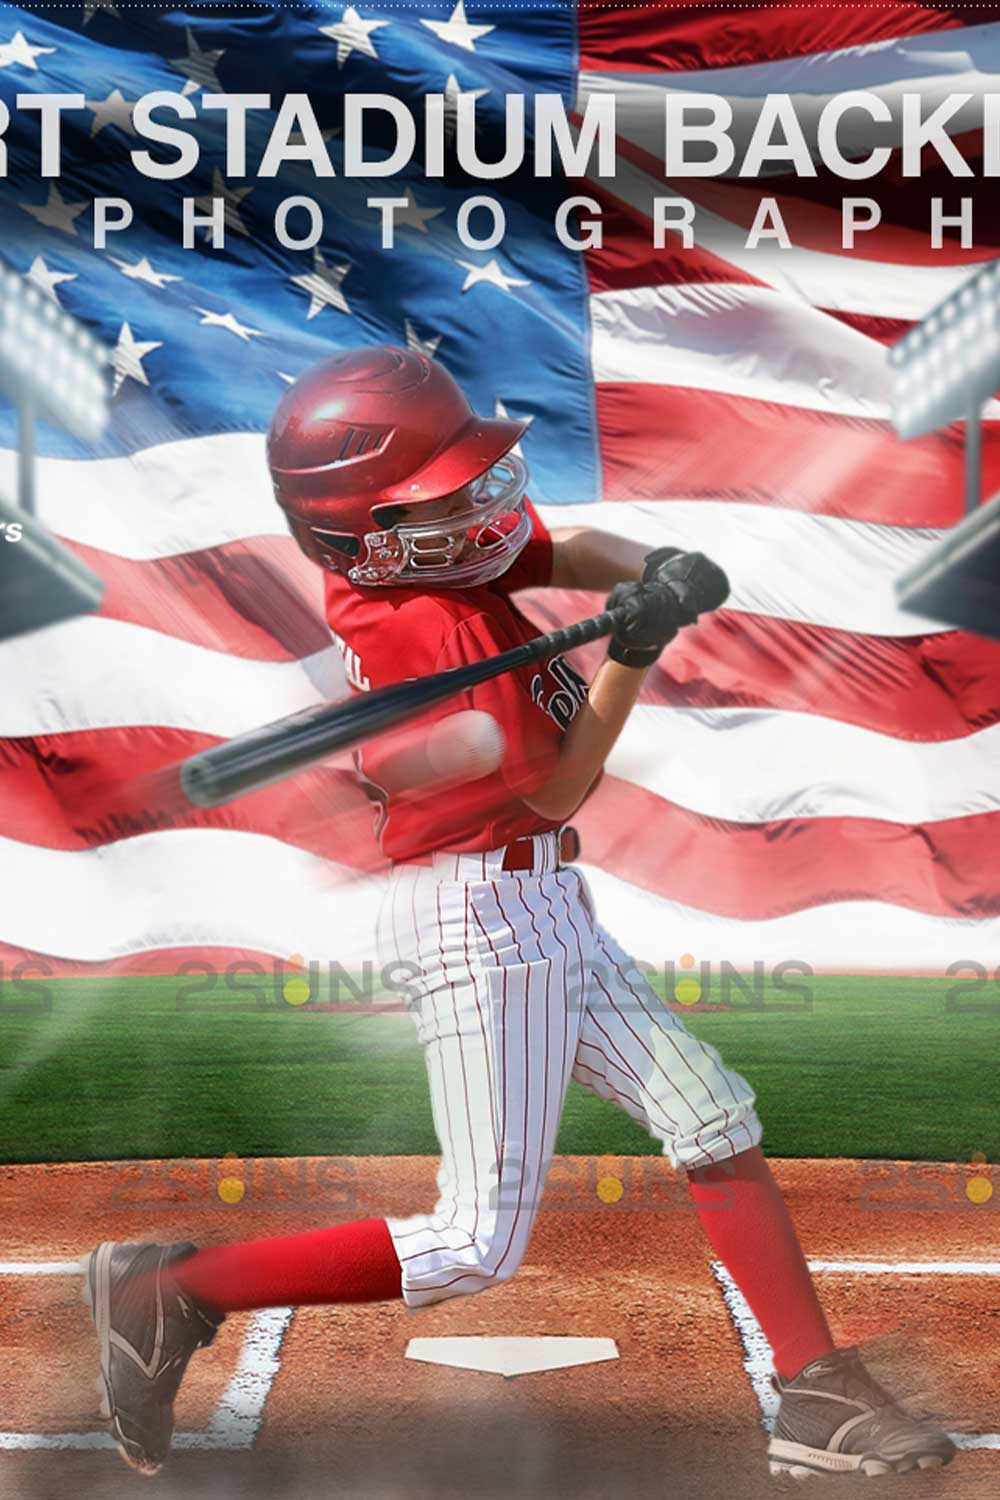 Baseball Backdrop Sports Digital Photoshop Overlay Pinterest Image.